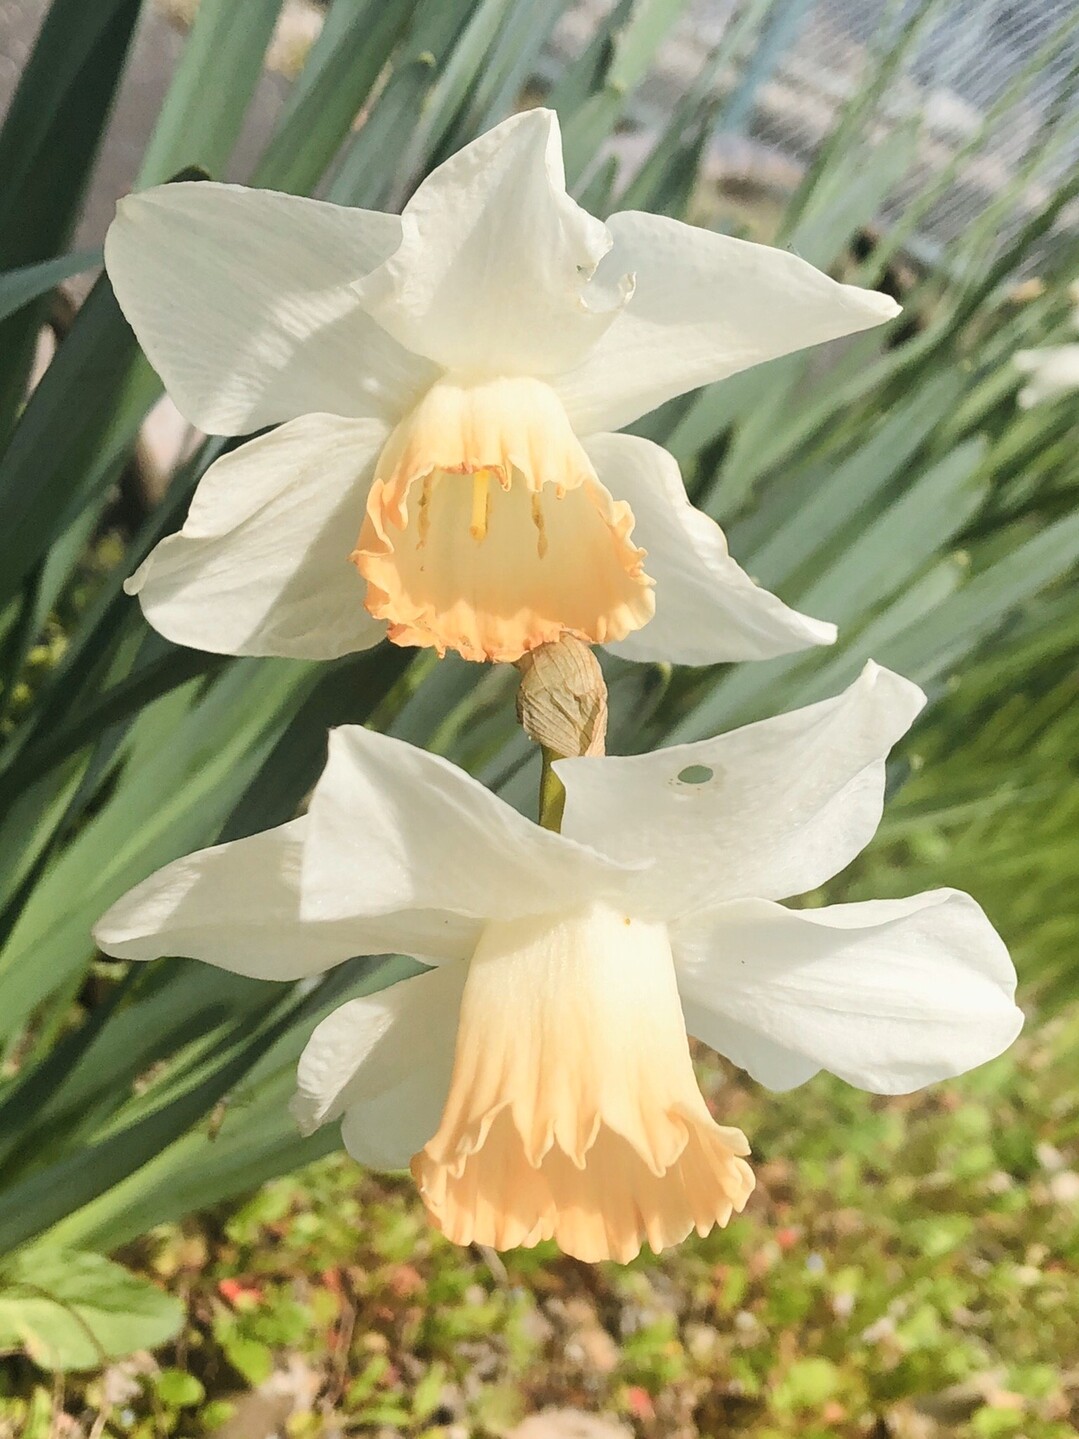 ポンポン山系花綴り 4月 それでも花は微笑み こころの瞳に潤いを やまたいらさんのポンポン山 釈迦岳 小塩山 若山の活動日記 Yamap ヤマップ